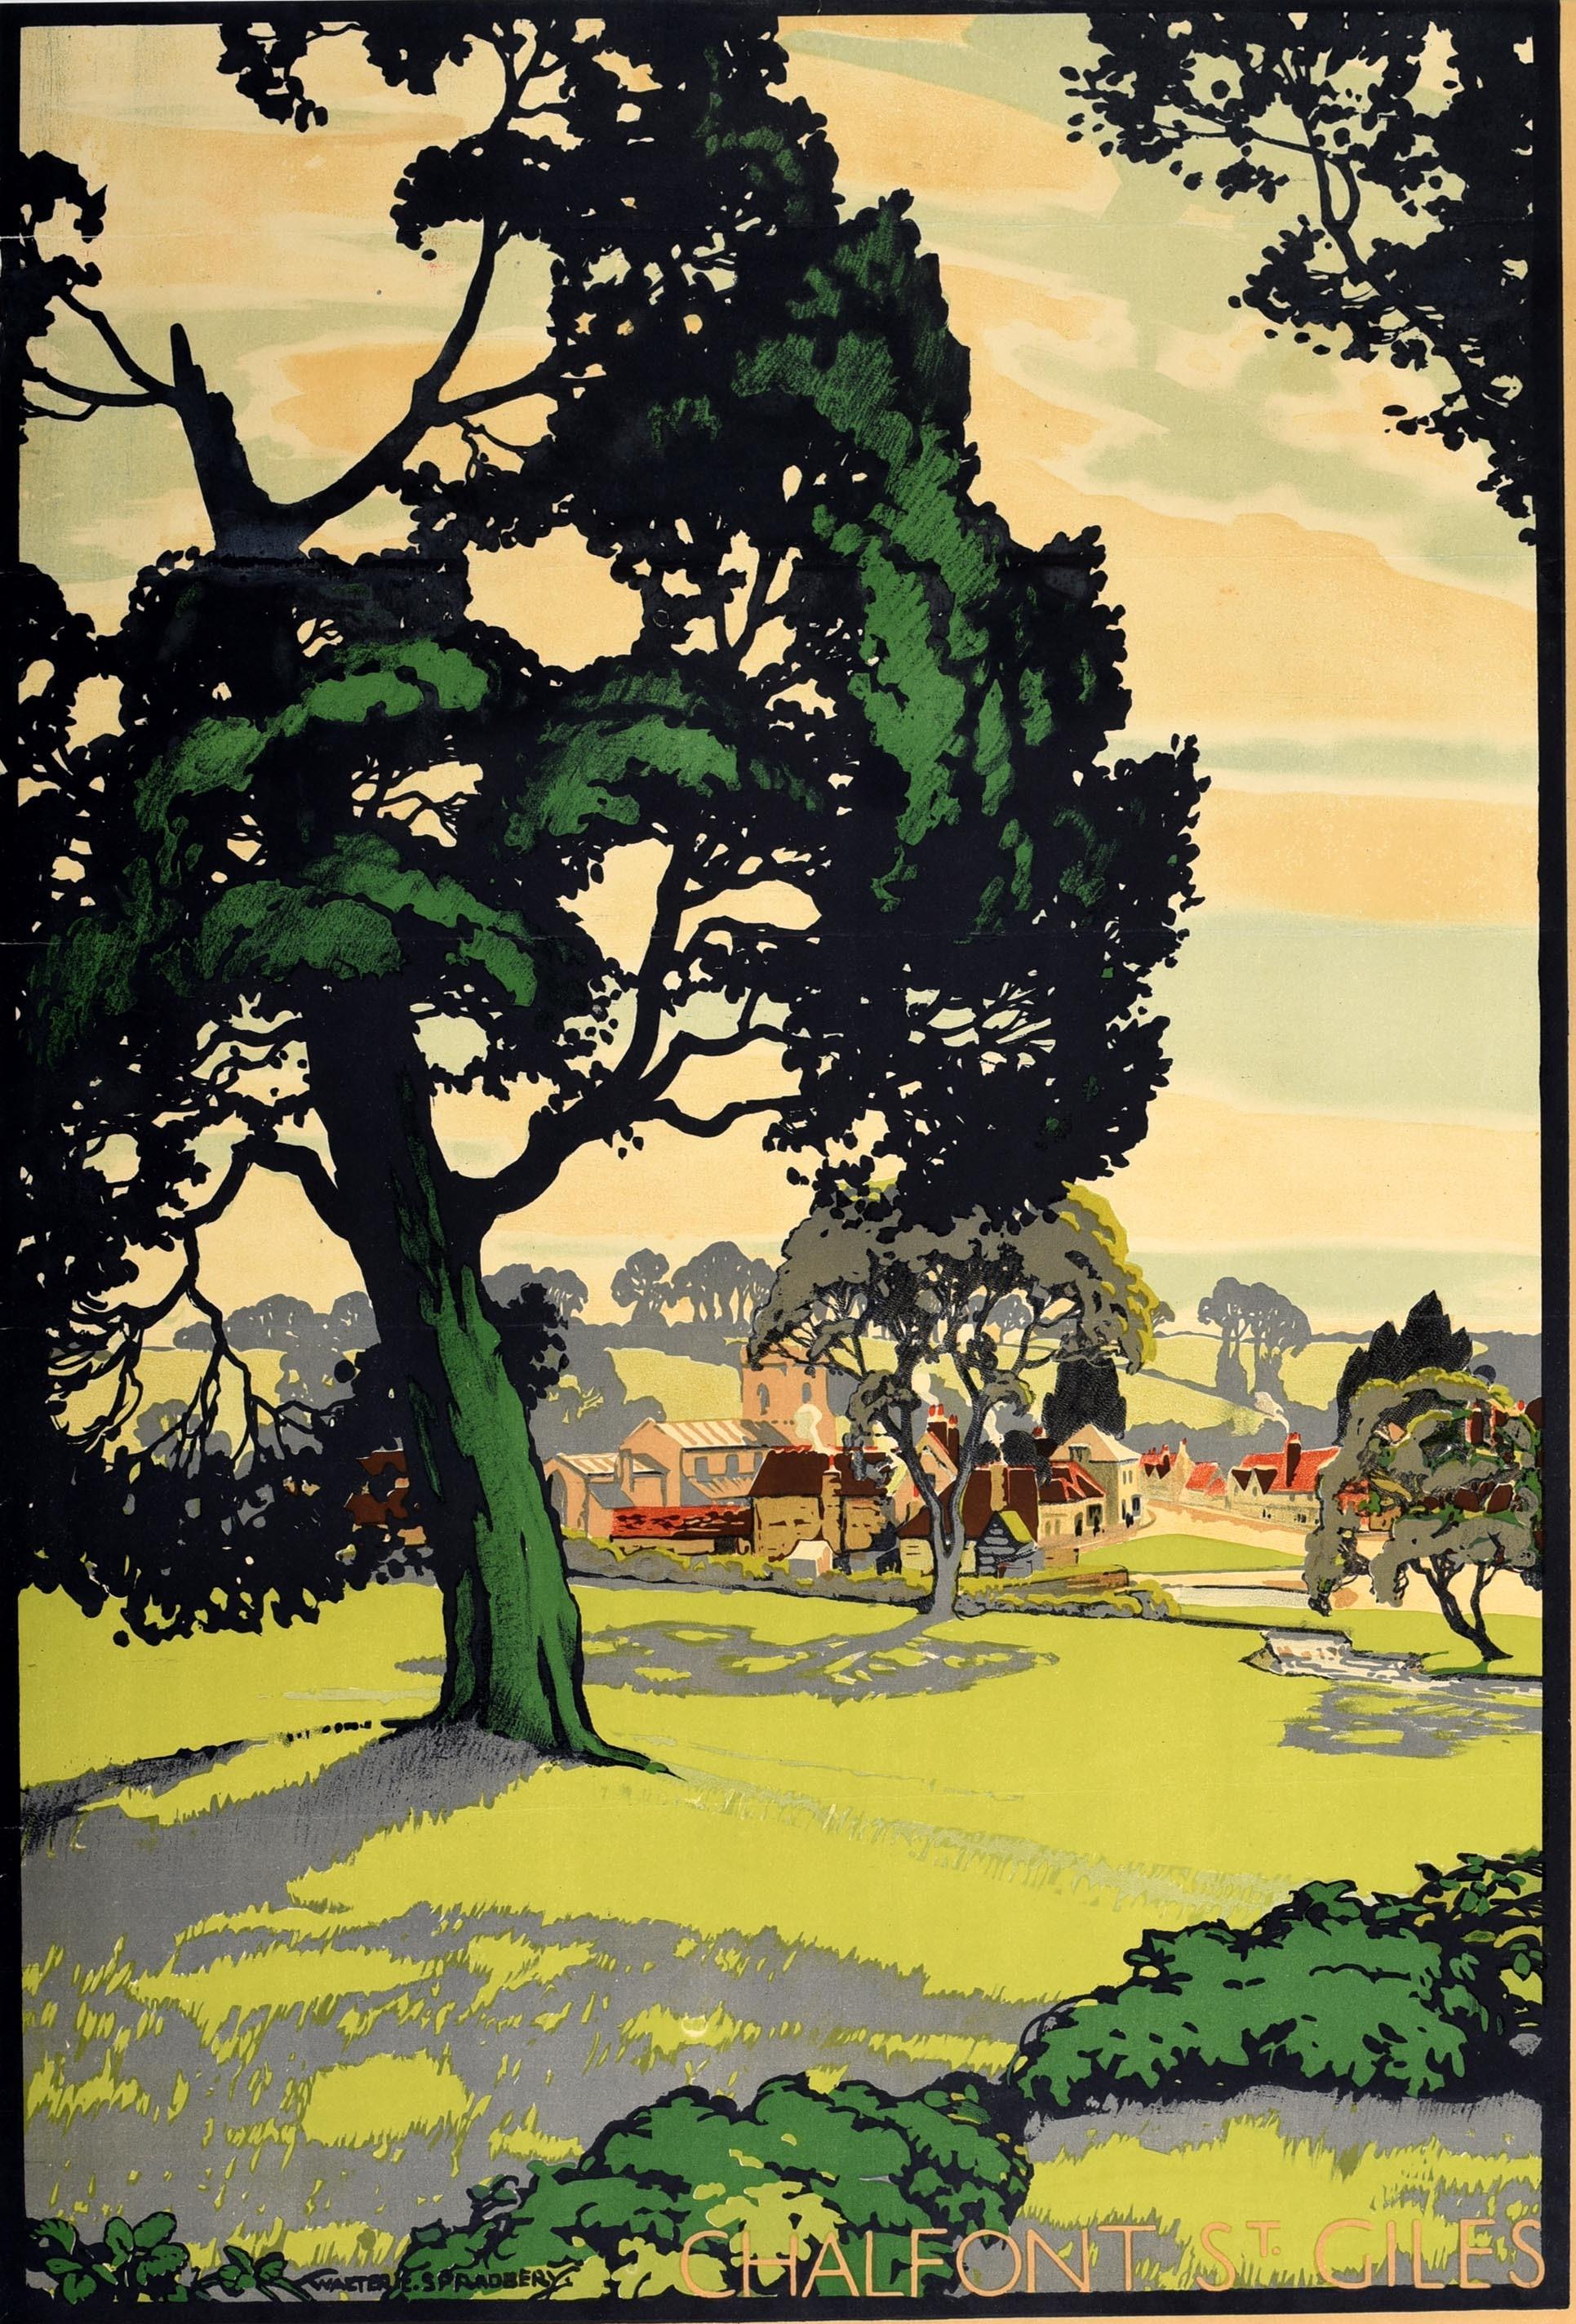 Originalplakat von London Transport - At London's Service - mit einem farbenfrohen Kunstwerk von Walter E. Spradbery (1889-1969) des historischen Dorfes Chalfont St Giles in Buckinghamshire, das die Cottages und die Kirche mit dem durch die Bäume